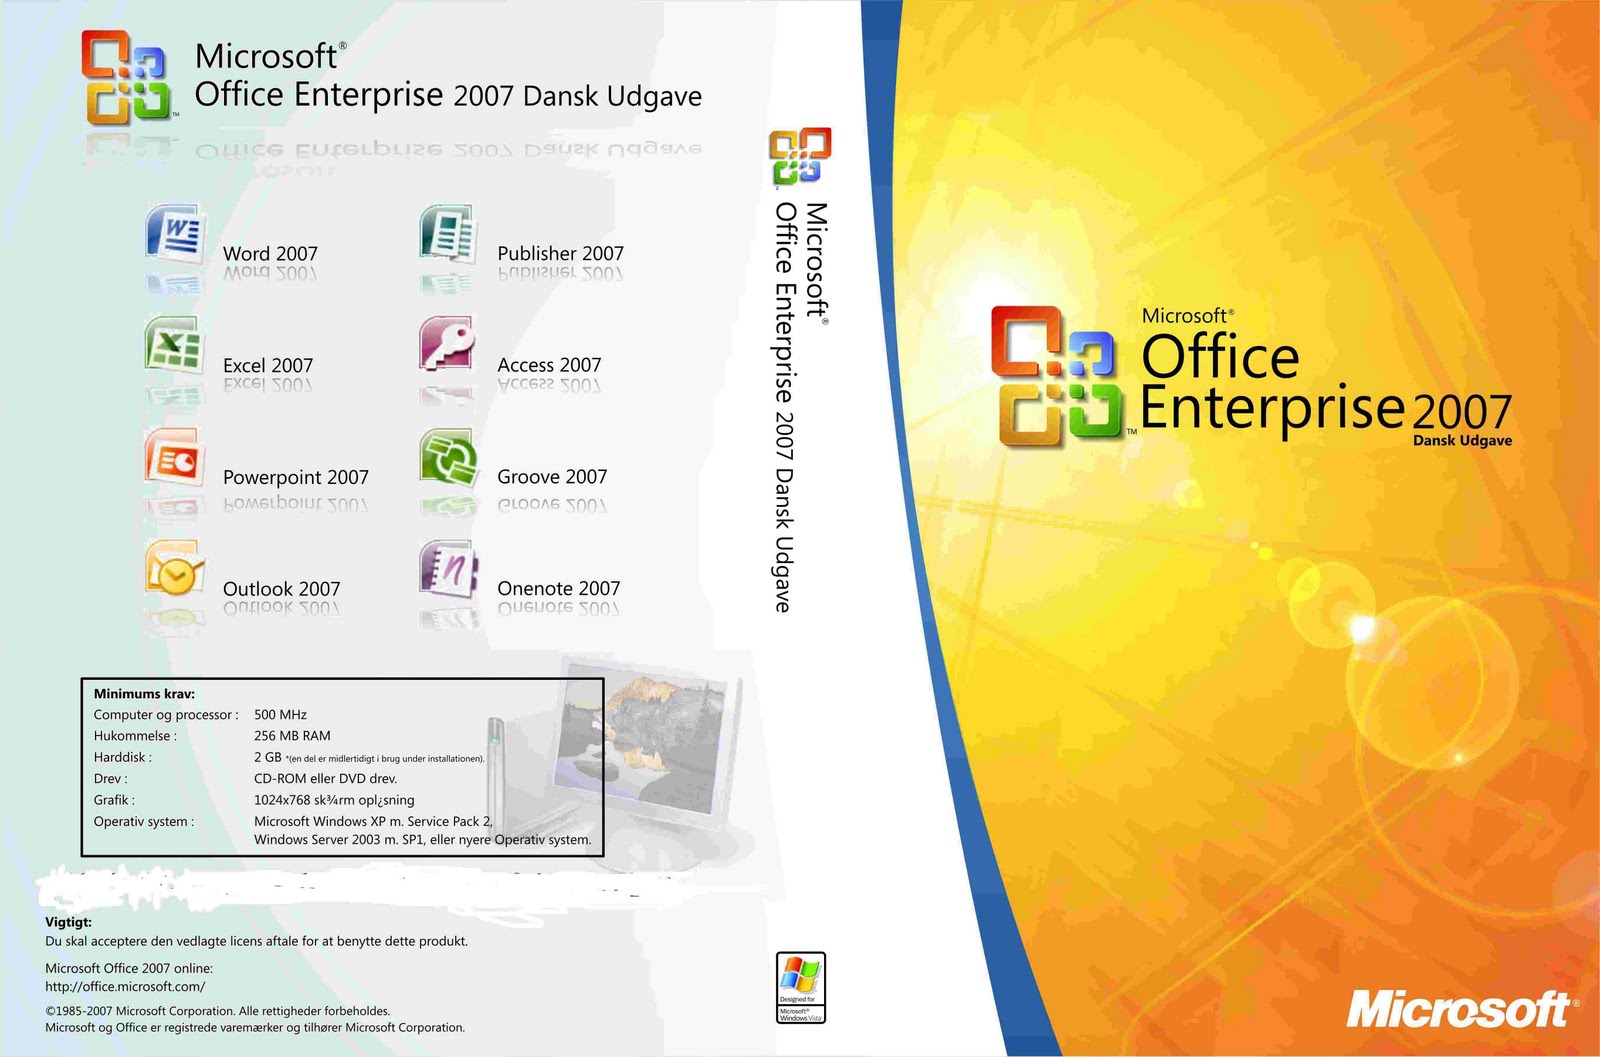 http://2.bp.blogspot.com/_L4SBhJki754/S8vhR0dtXsI/AAAAAAAAAR0/bpzpQEEFGhw/s1600/Microsoft_Office_Enterprise_2007.jpg